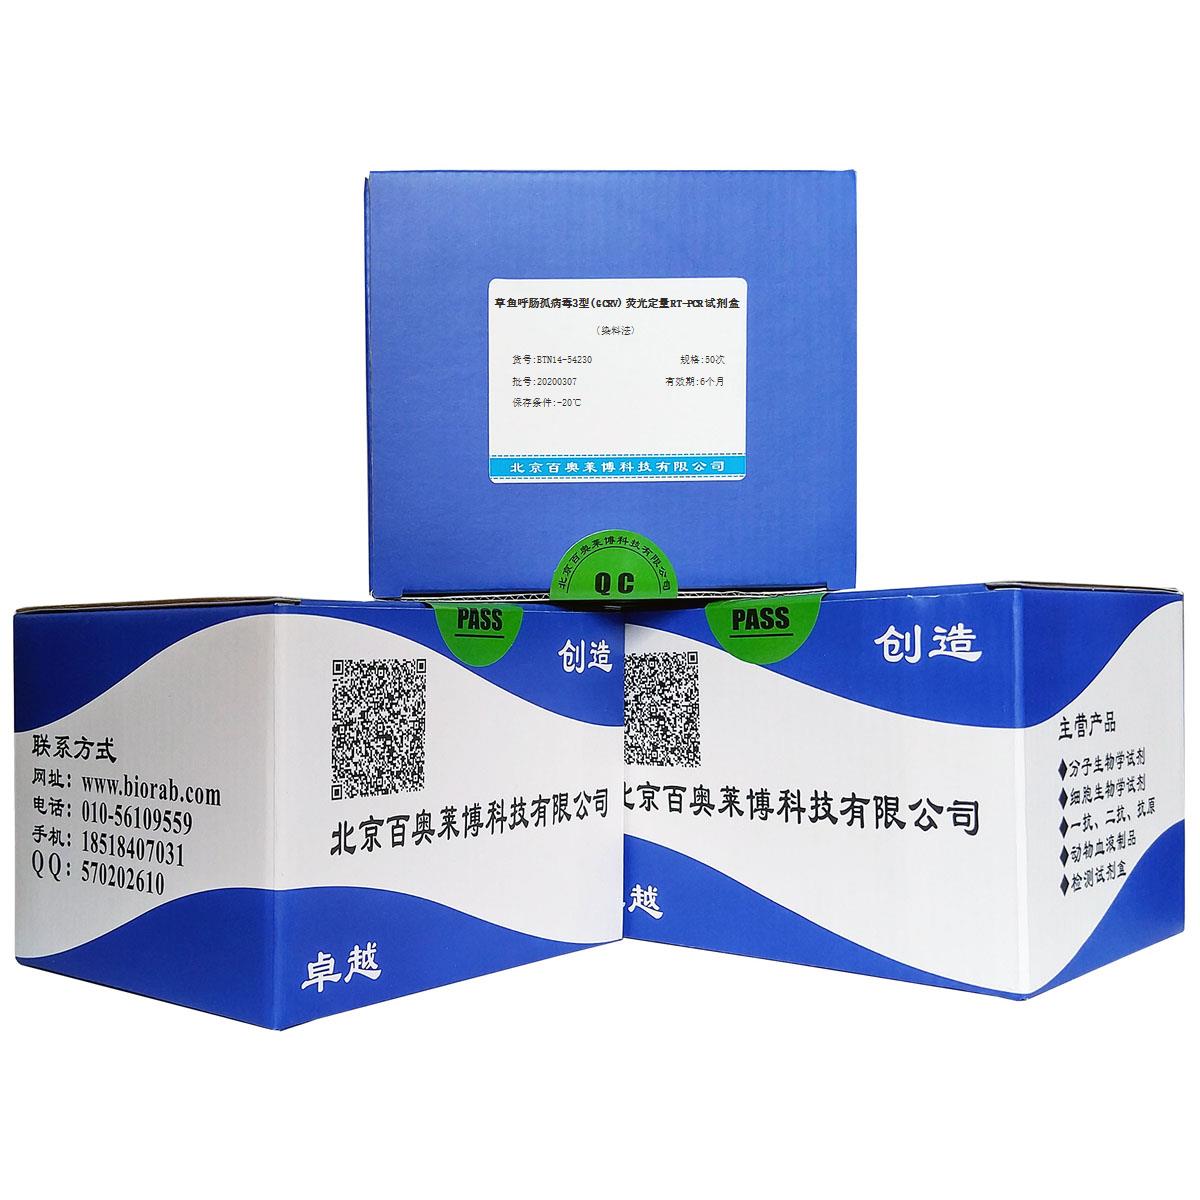 草鱼呼肠孤病毒3型(GCRV)荧光定量RT-PCR试剂盒(染料法)